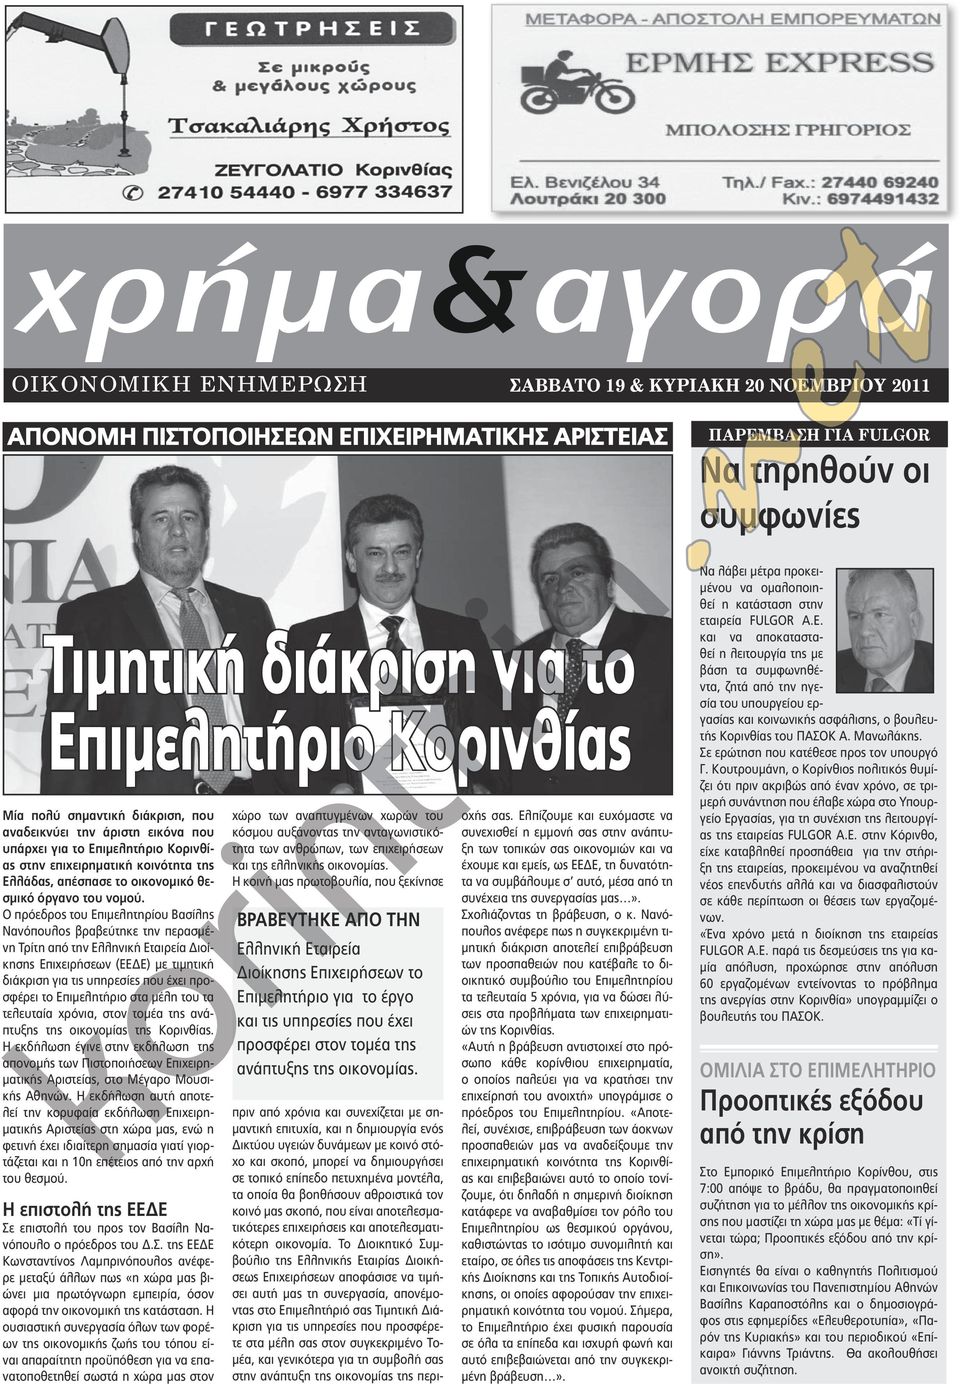 Ο πρόεδρος του Επιμελητηρίου Βασίλης Νανόπουλος βραβεύτηκε την περασμένη Τρίτη από την Ελληνική Εταιρεία Διοίκησης Επιχειρήσεων (ΕΕΔΕ) με τιμητική διάκριση για τις υπηρεσίες που έχει προσφέρει το